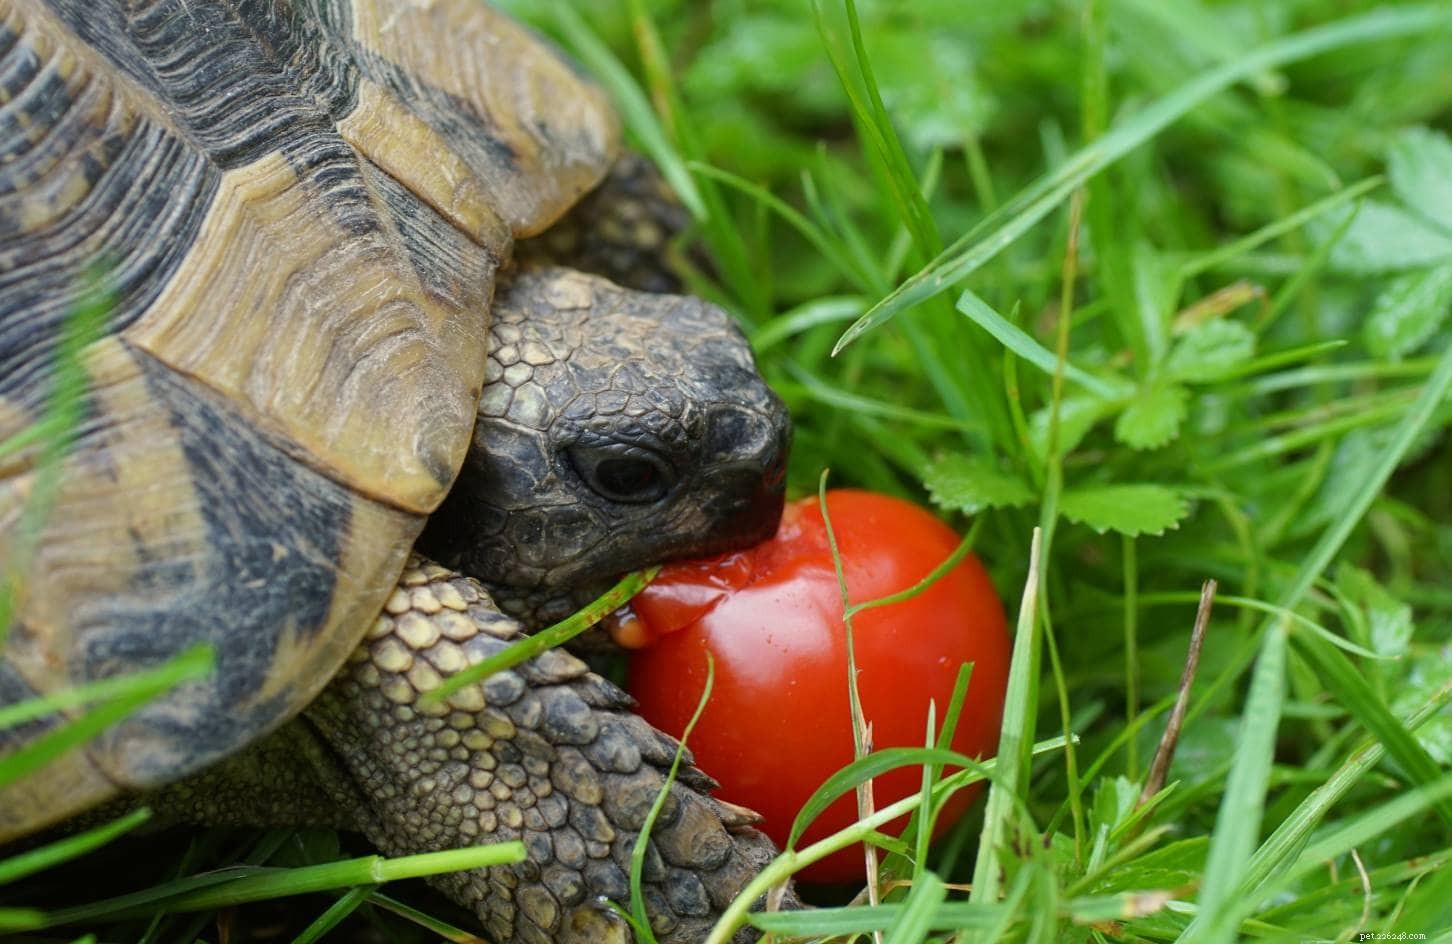 Můžou želvy jíst rajčata? Co potřebujete vědět!